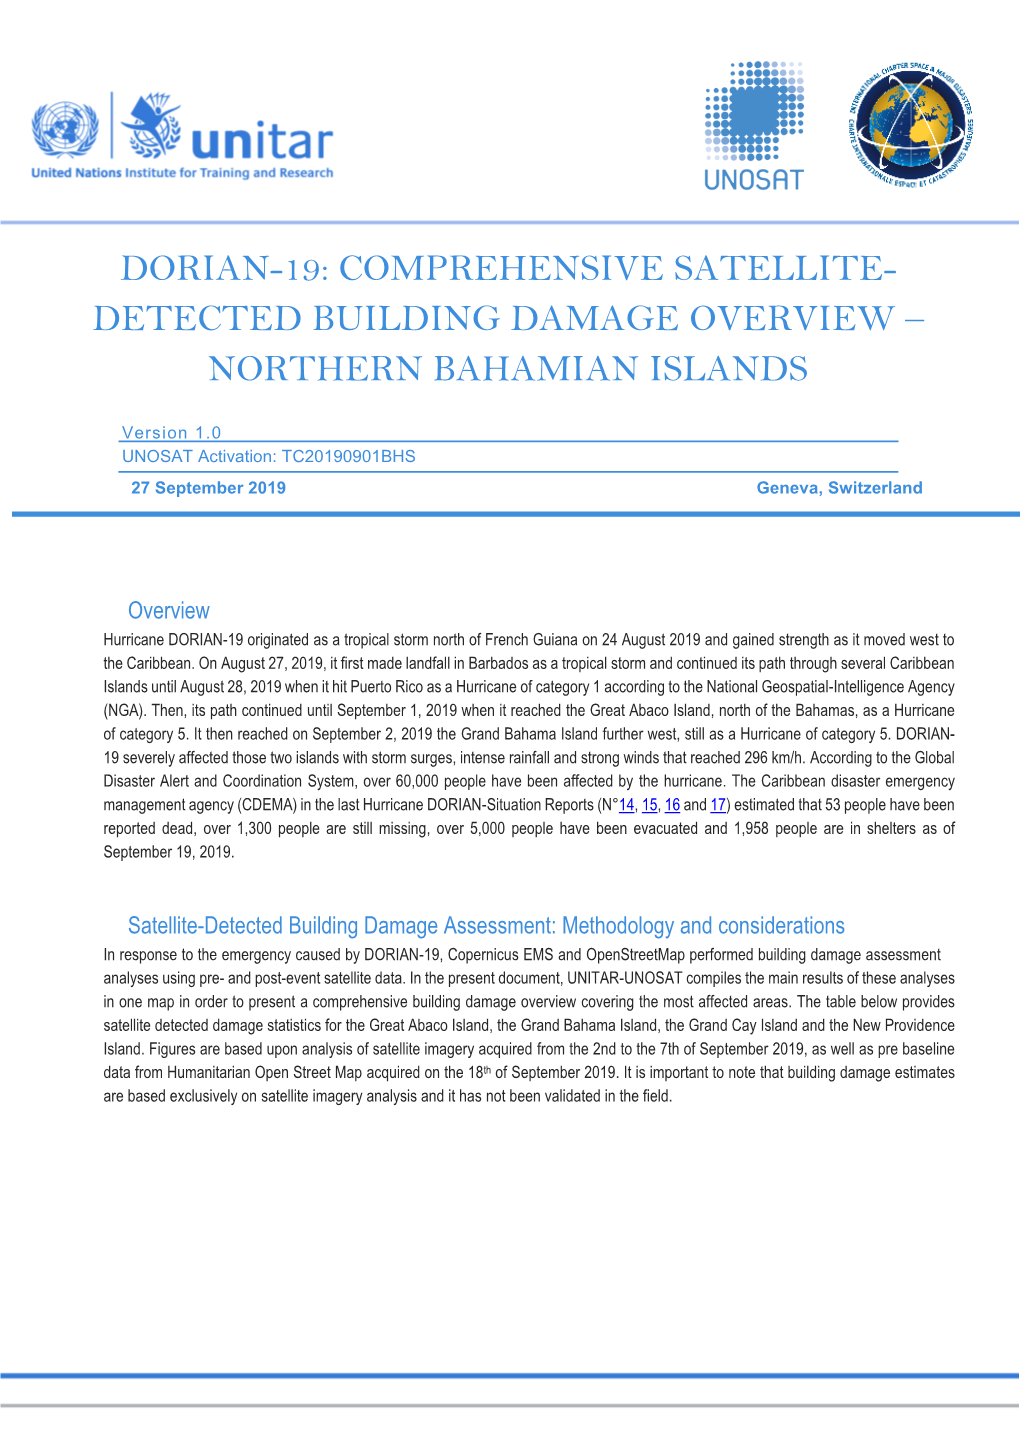 Northern Bahamian Islands